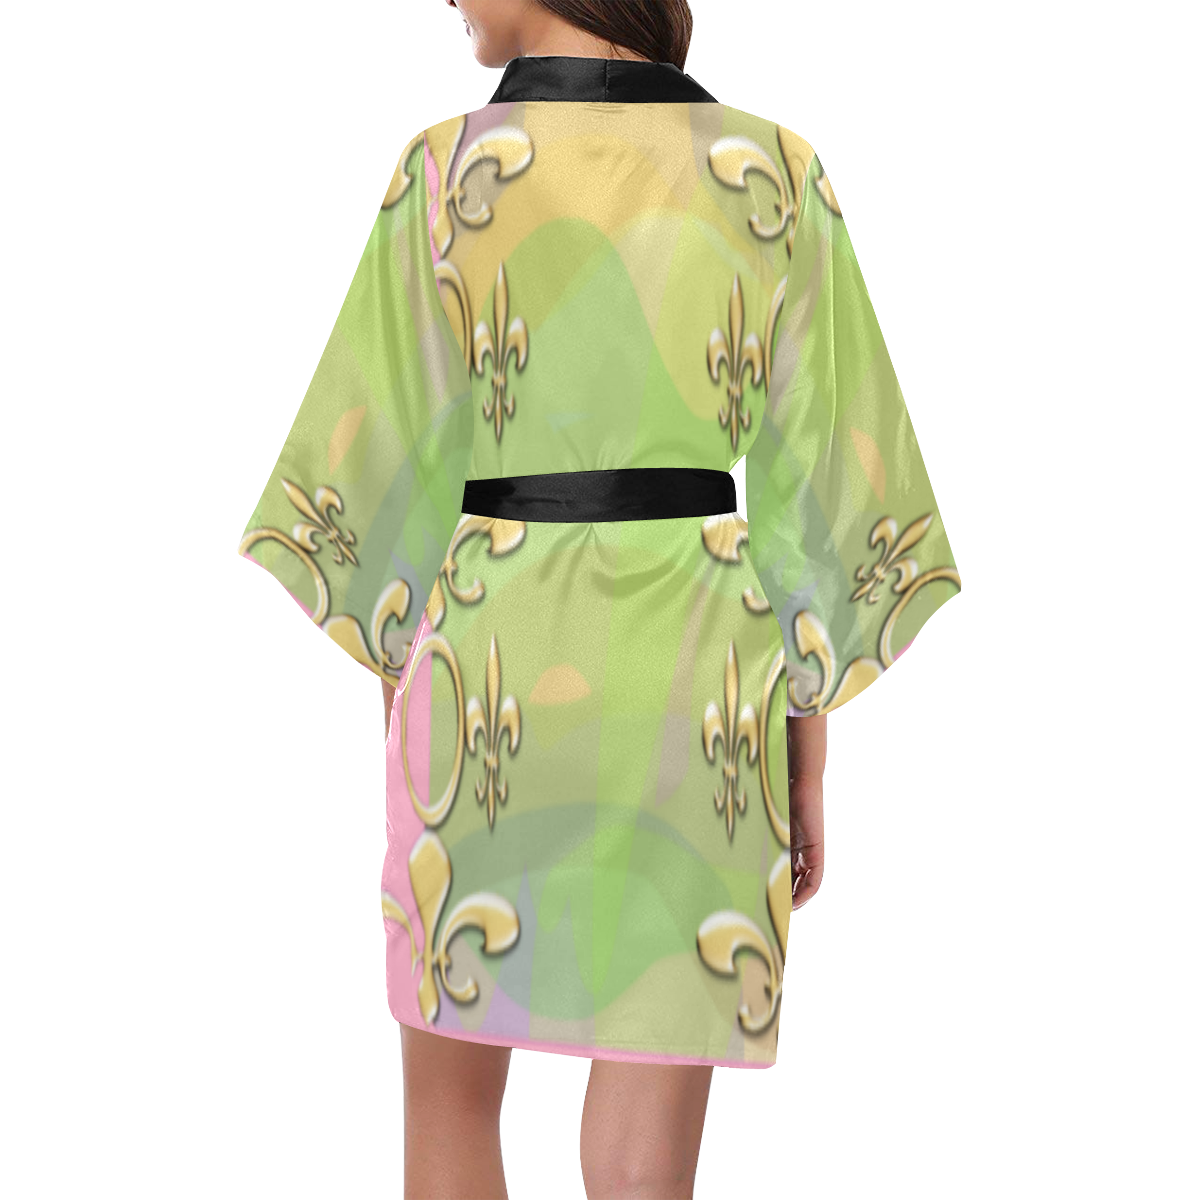 SERIPPY Kimono Robe